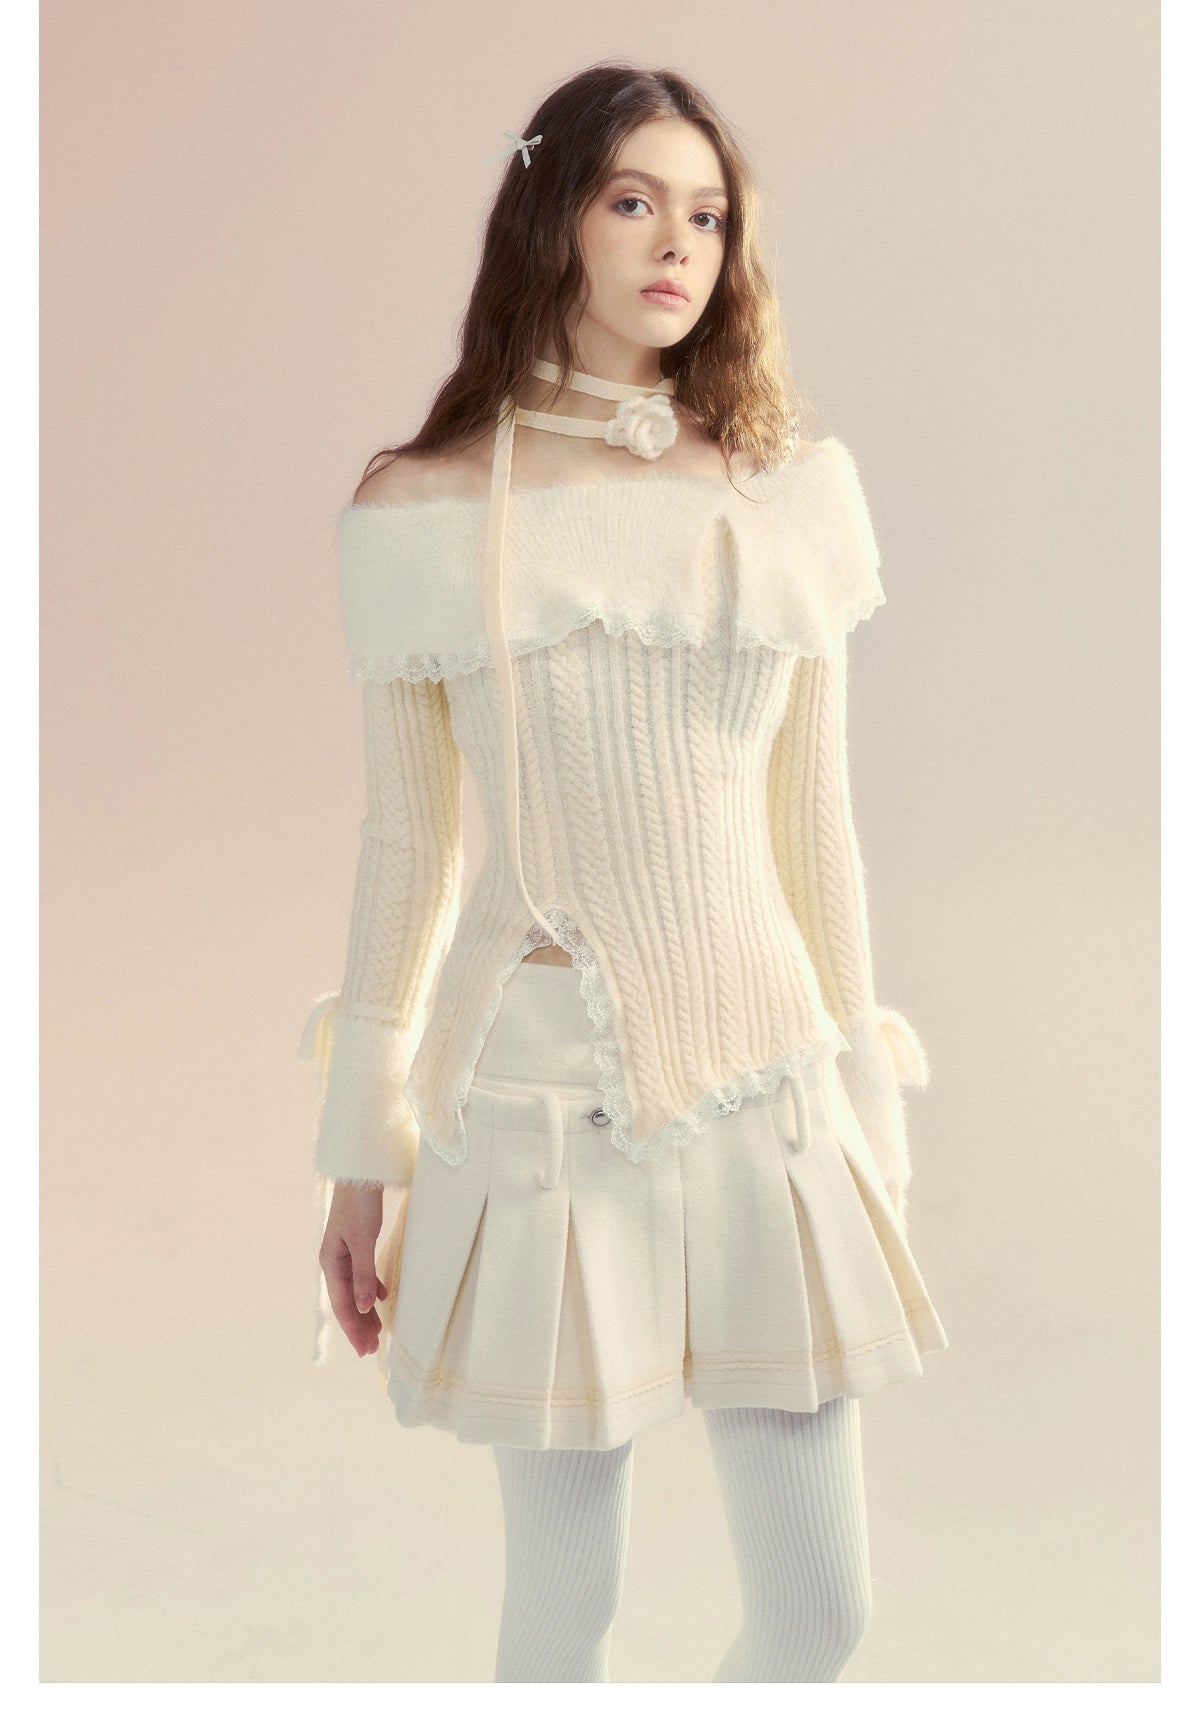 White Off-Shoulder Long sleeve Sweater - CHINASQUAD